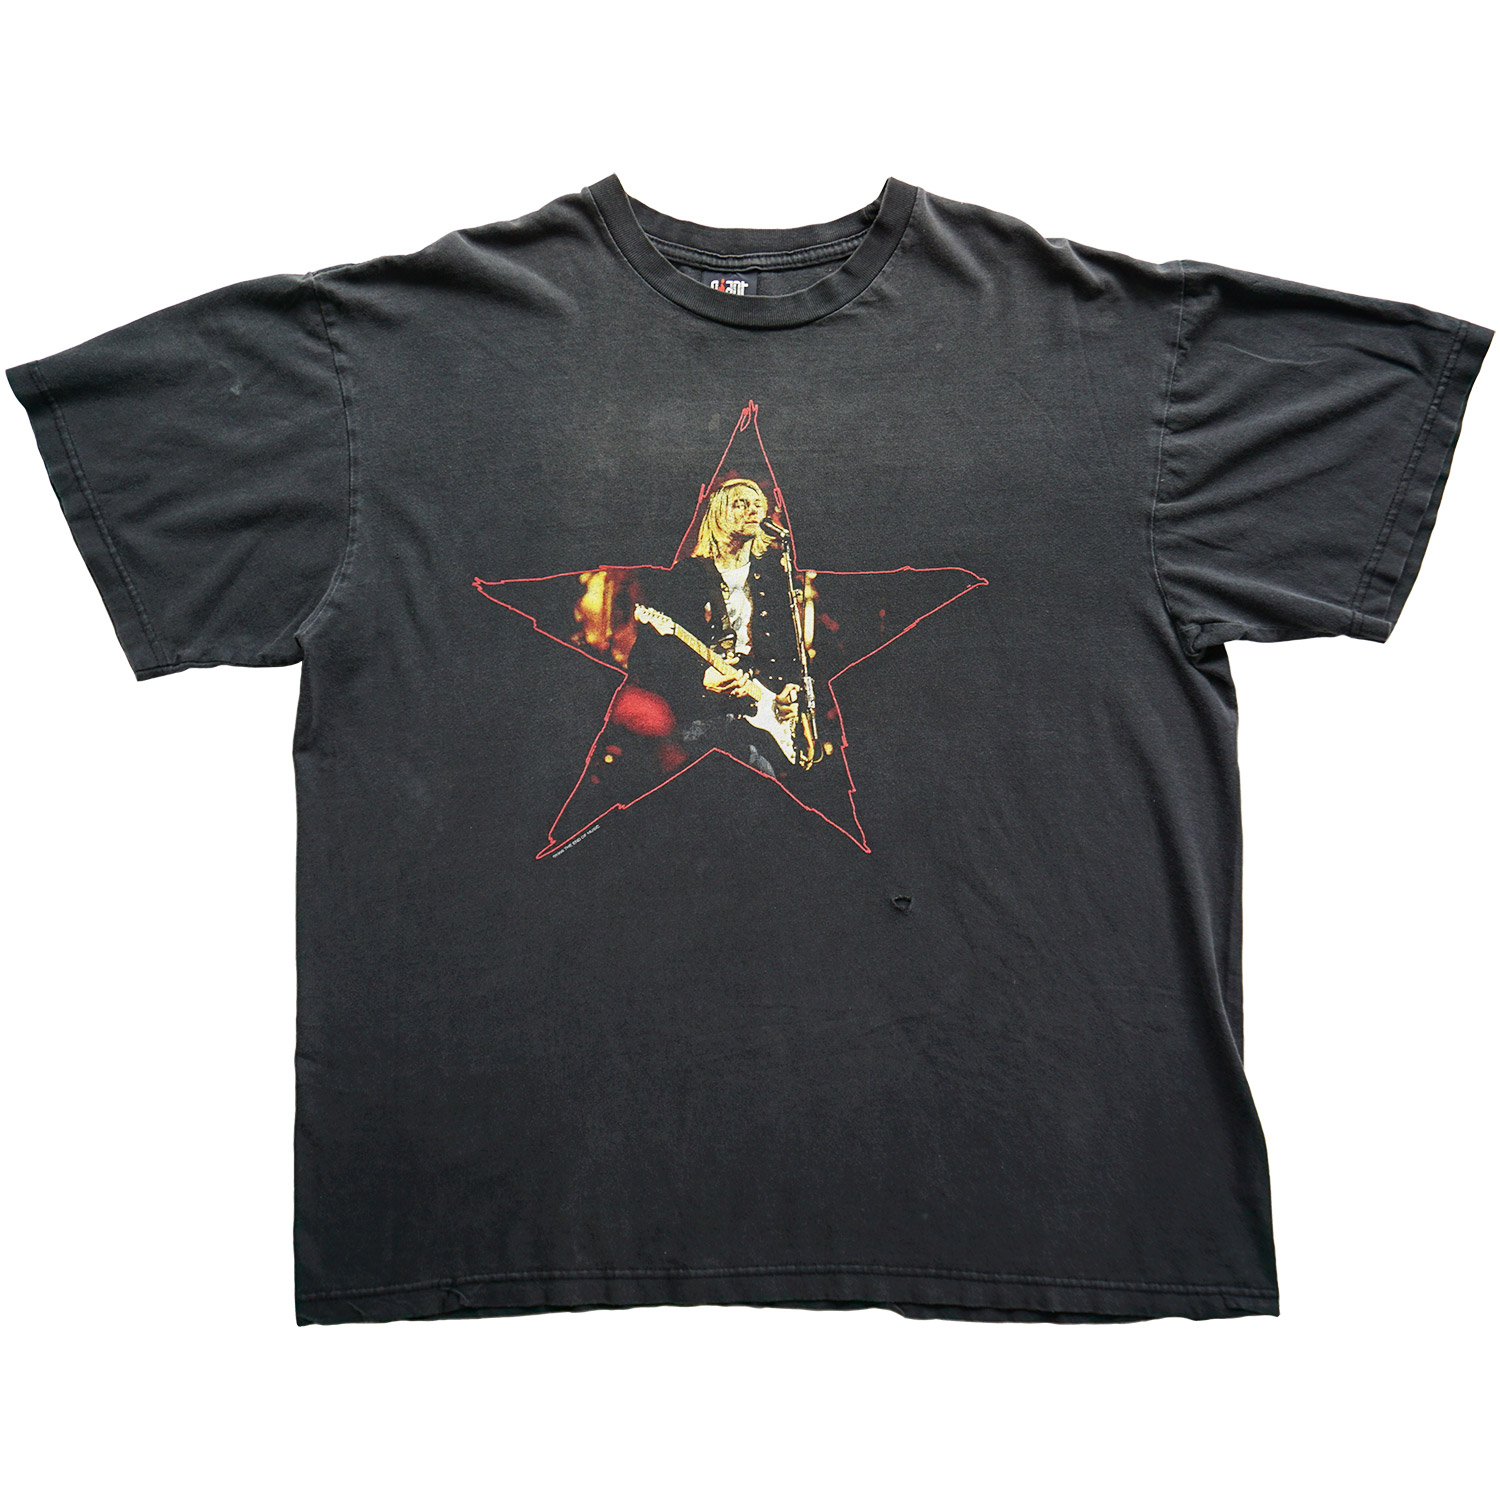 Vintage Kurt Cobain Live and Loud T-shirt, Front